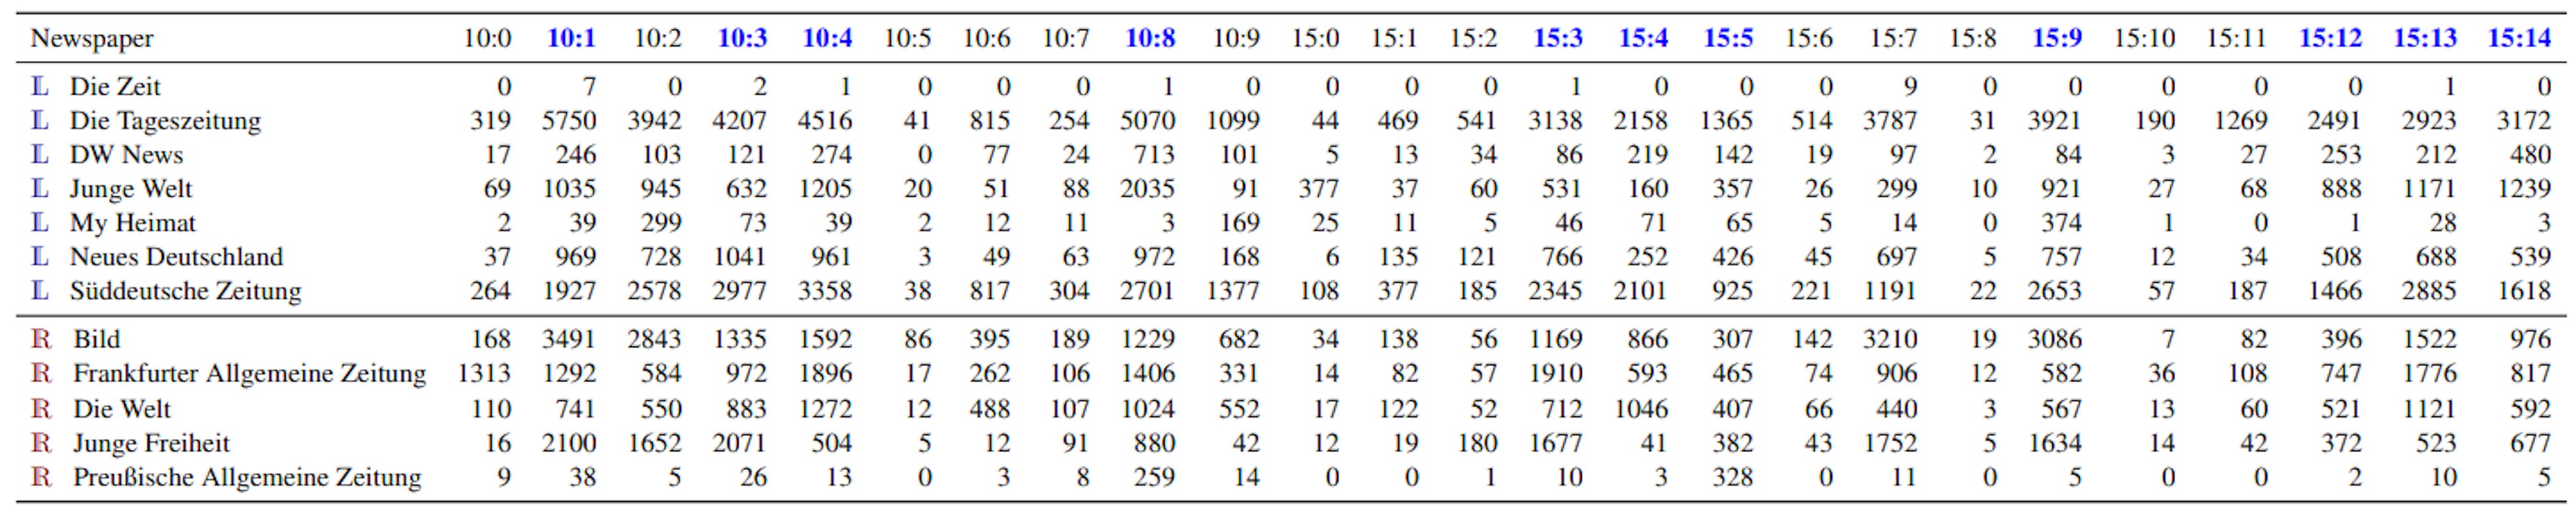 Tabela 7: Número de artigos por jornal (linha) e tópico (coluna) para o subconjunto alemão do OSCAR. Consulte a Tabela 5 para a definição dos tópicos. Os tópicos em negrito e em azul são usados para treinar o classificador após balancear L vs R.